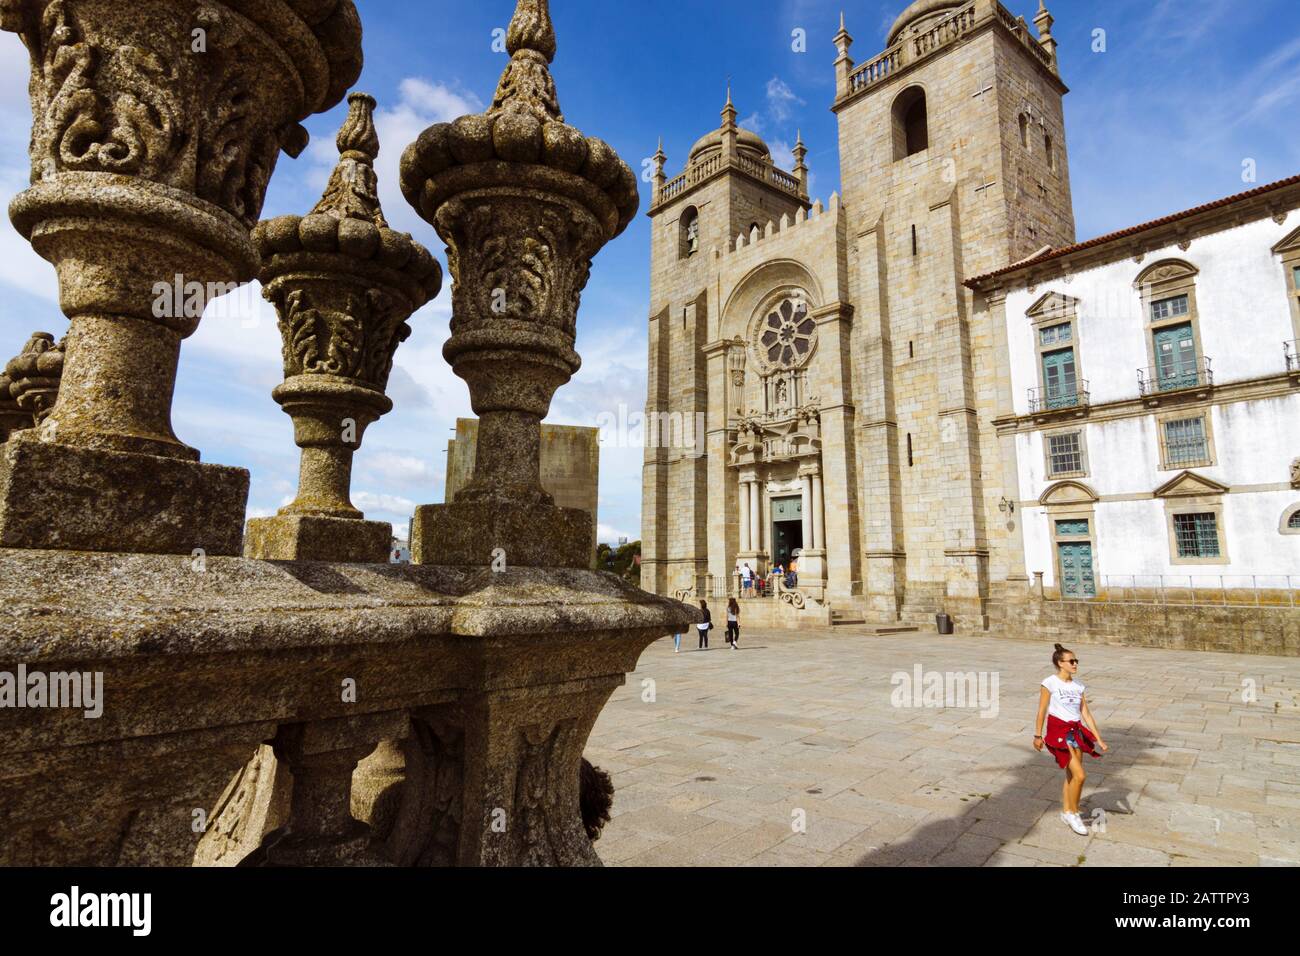 Porto, Portugal: EINE junge Frau spaziert an der Kathedrale von Porto vorbei, die im 12. Jahrhundert erbaut wurde, mit Umbauten im Stil des Barock und des 20. Jahrhunderts. Stockfoto